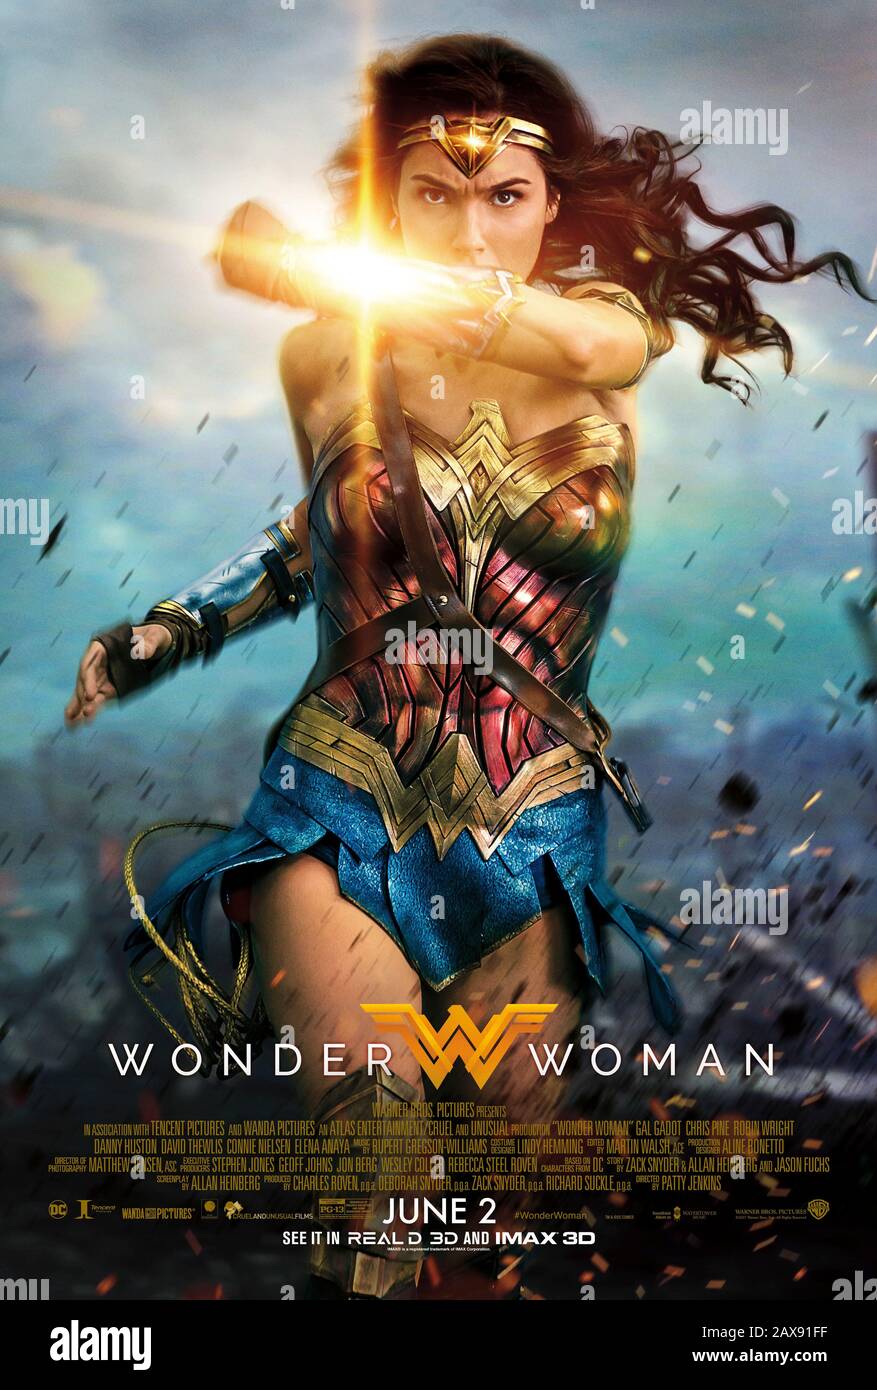 Wonder Woman (2017) unter der Regie von Patty Jenkins und mit Gal Gadot, Chris Pine, Robin Wright, Ewen Bremner und Connie Nielsen in den Hauptrollen. DC Comics Amazonische Kriegerin Diana trifft auf die große Leinwand und hilft der Menschheit während des ersten Weltkriegs Stockfoto